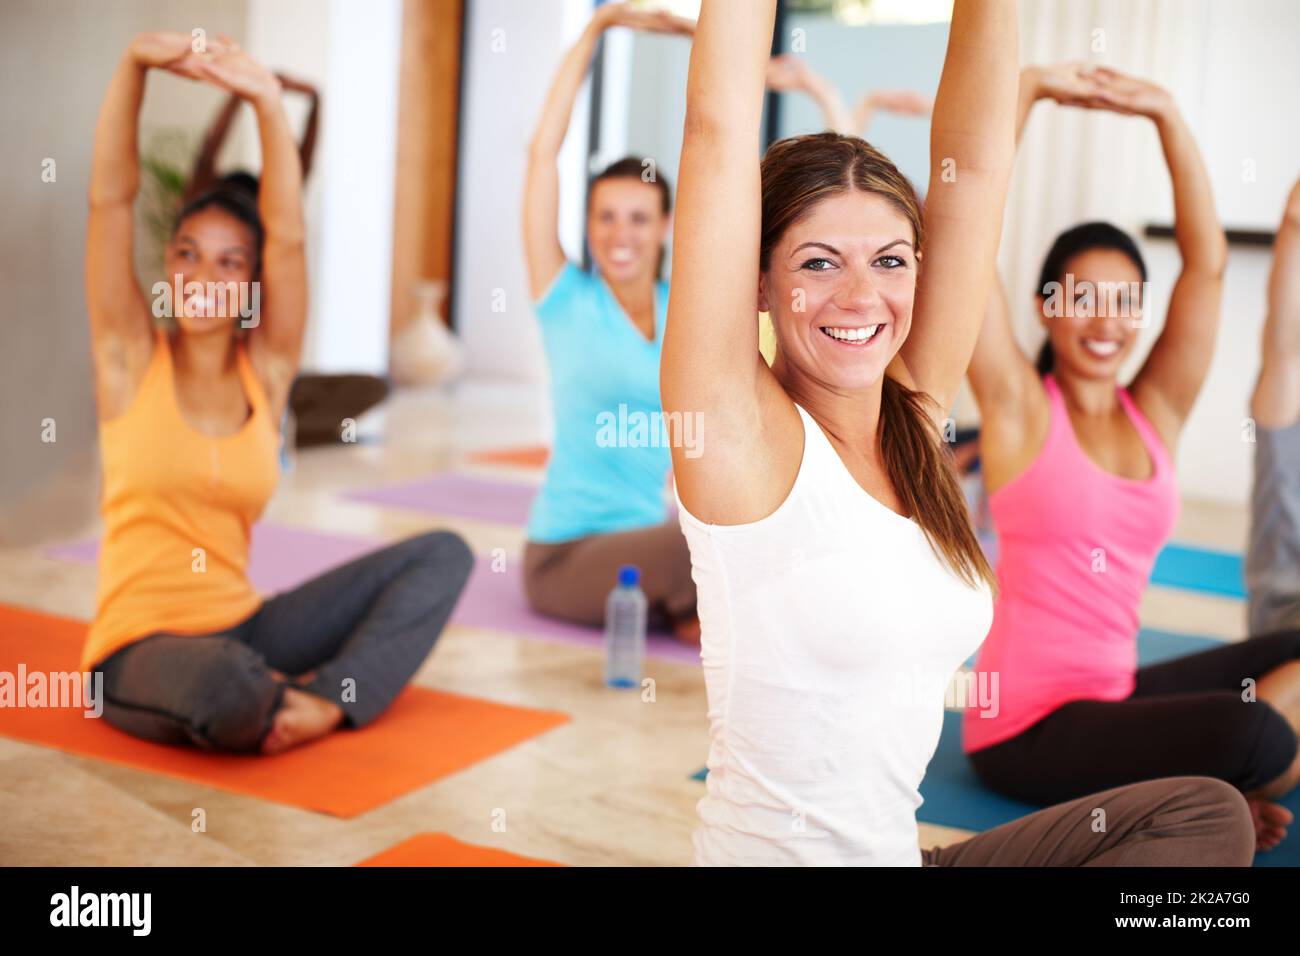 Rassembler le corps et l'esprit. Un groupe de personnes s'étendant vers le haut en cours de yoga. Banque D'Images